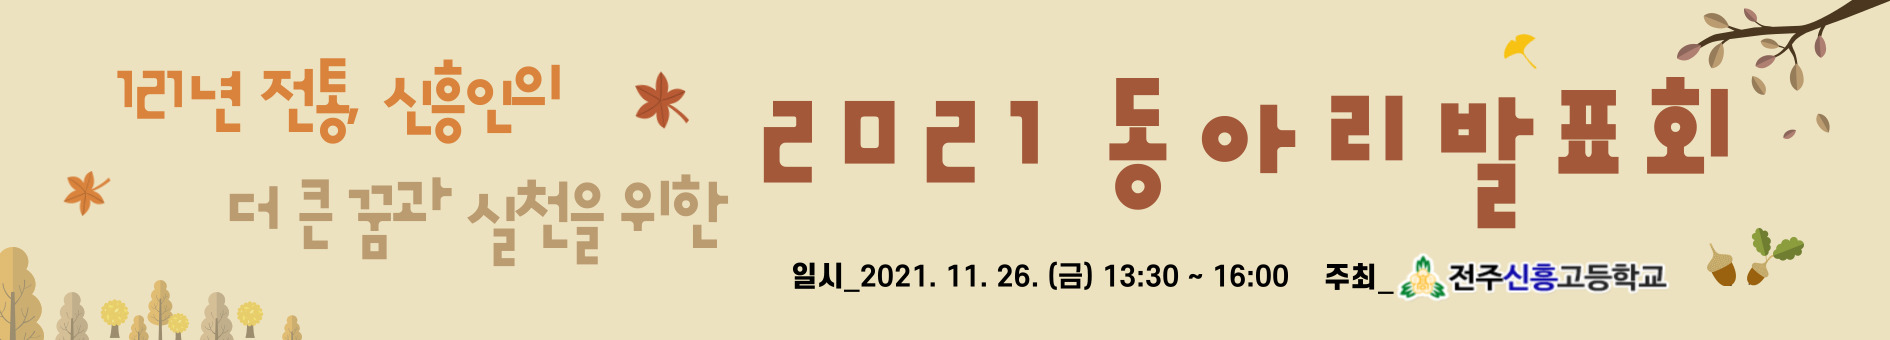 2021 동아리 발표회 현수막